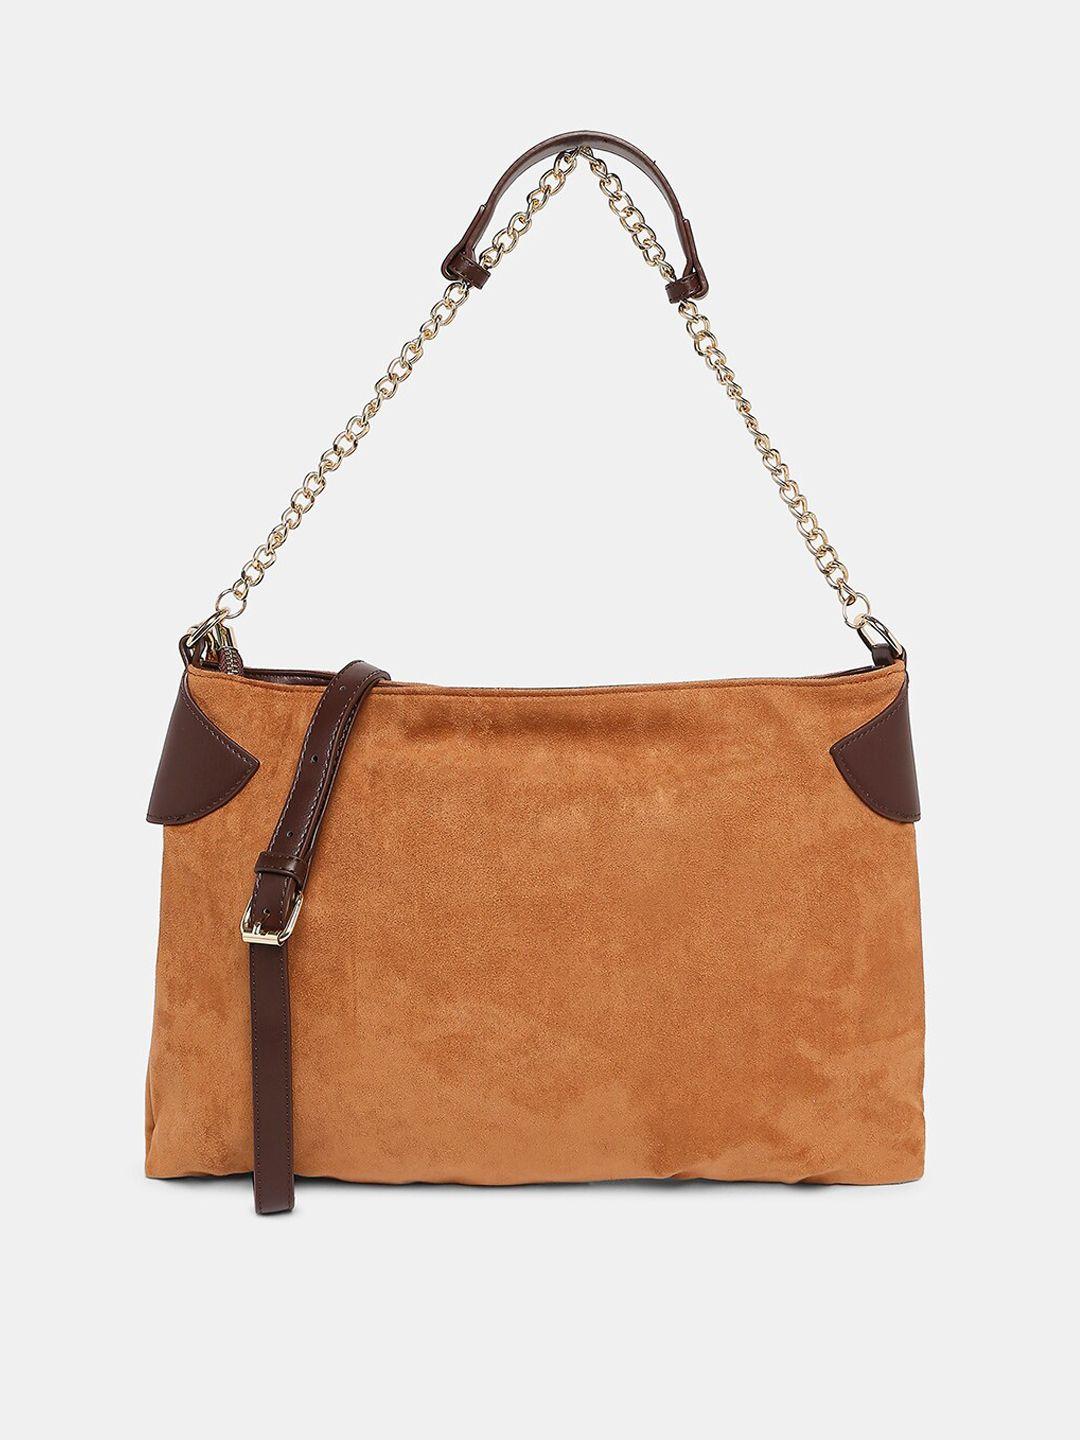 20dresses tan brown oversized structured shoulder bag